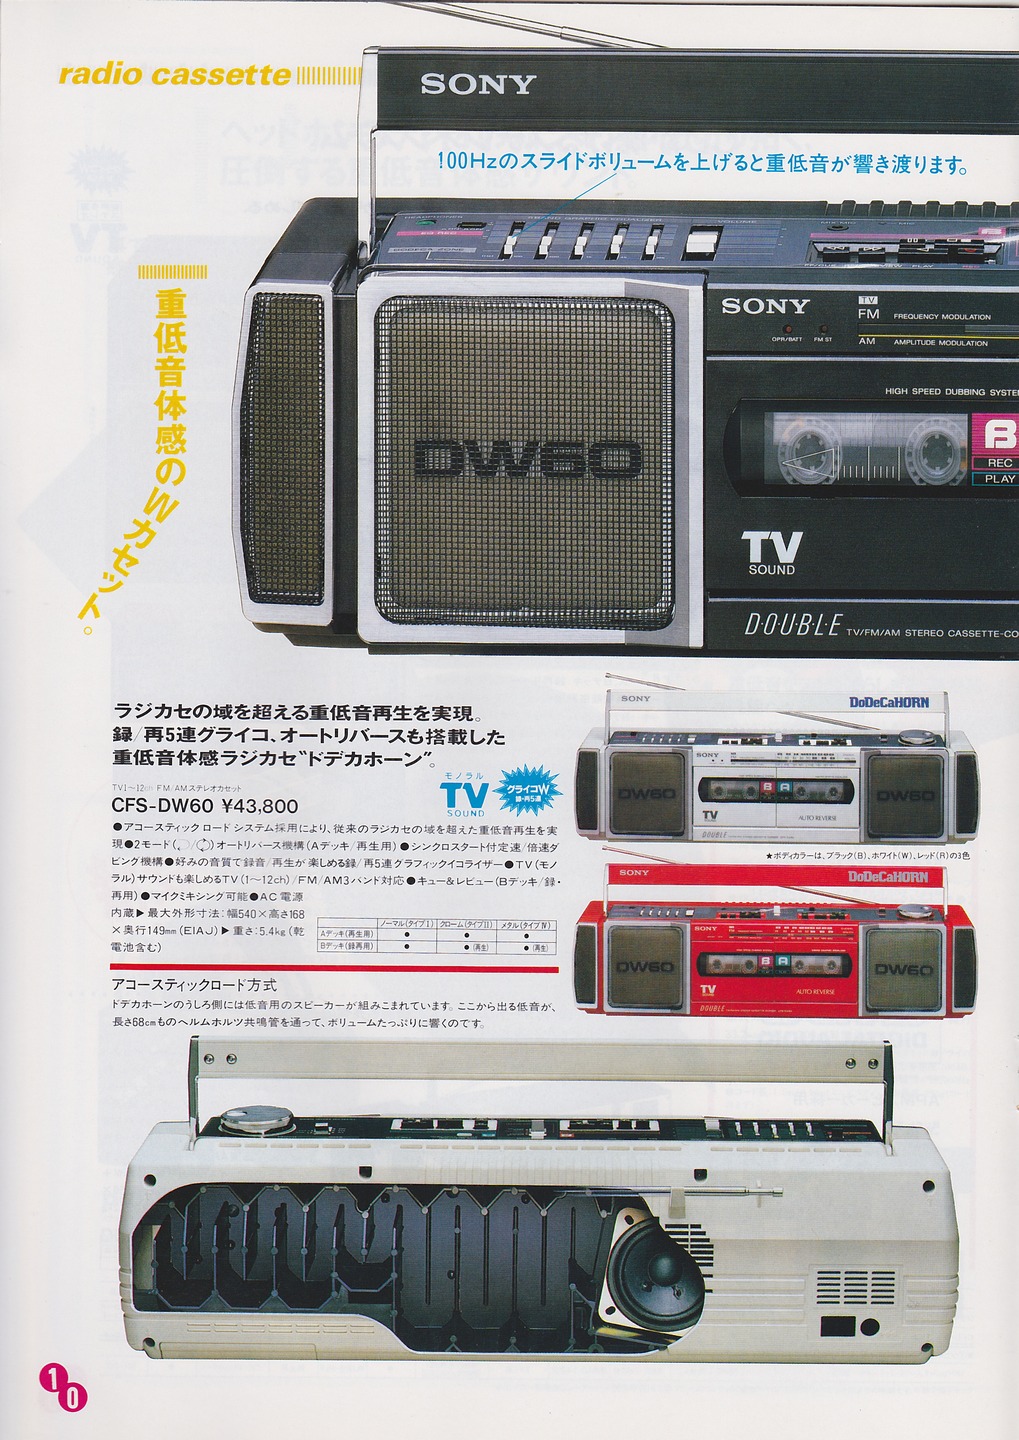 カセットコーダー / ラジオカセット 1986年5月 | ソニー坊やと呼ばれた男